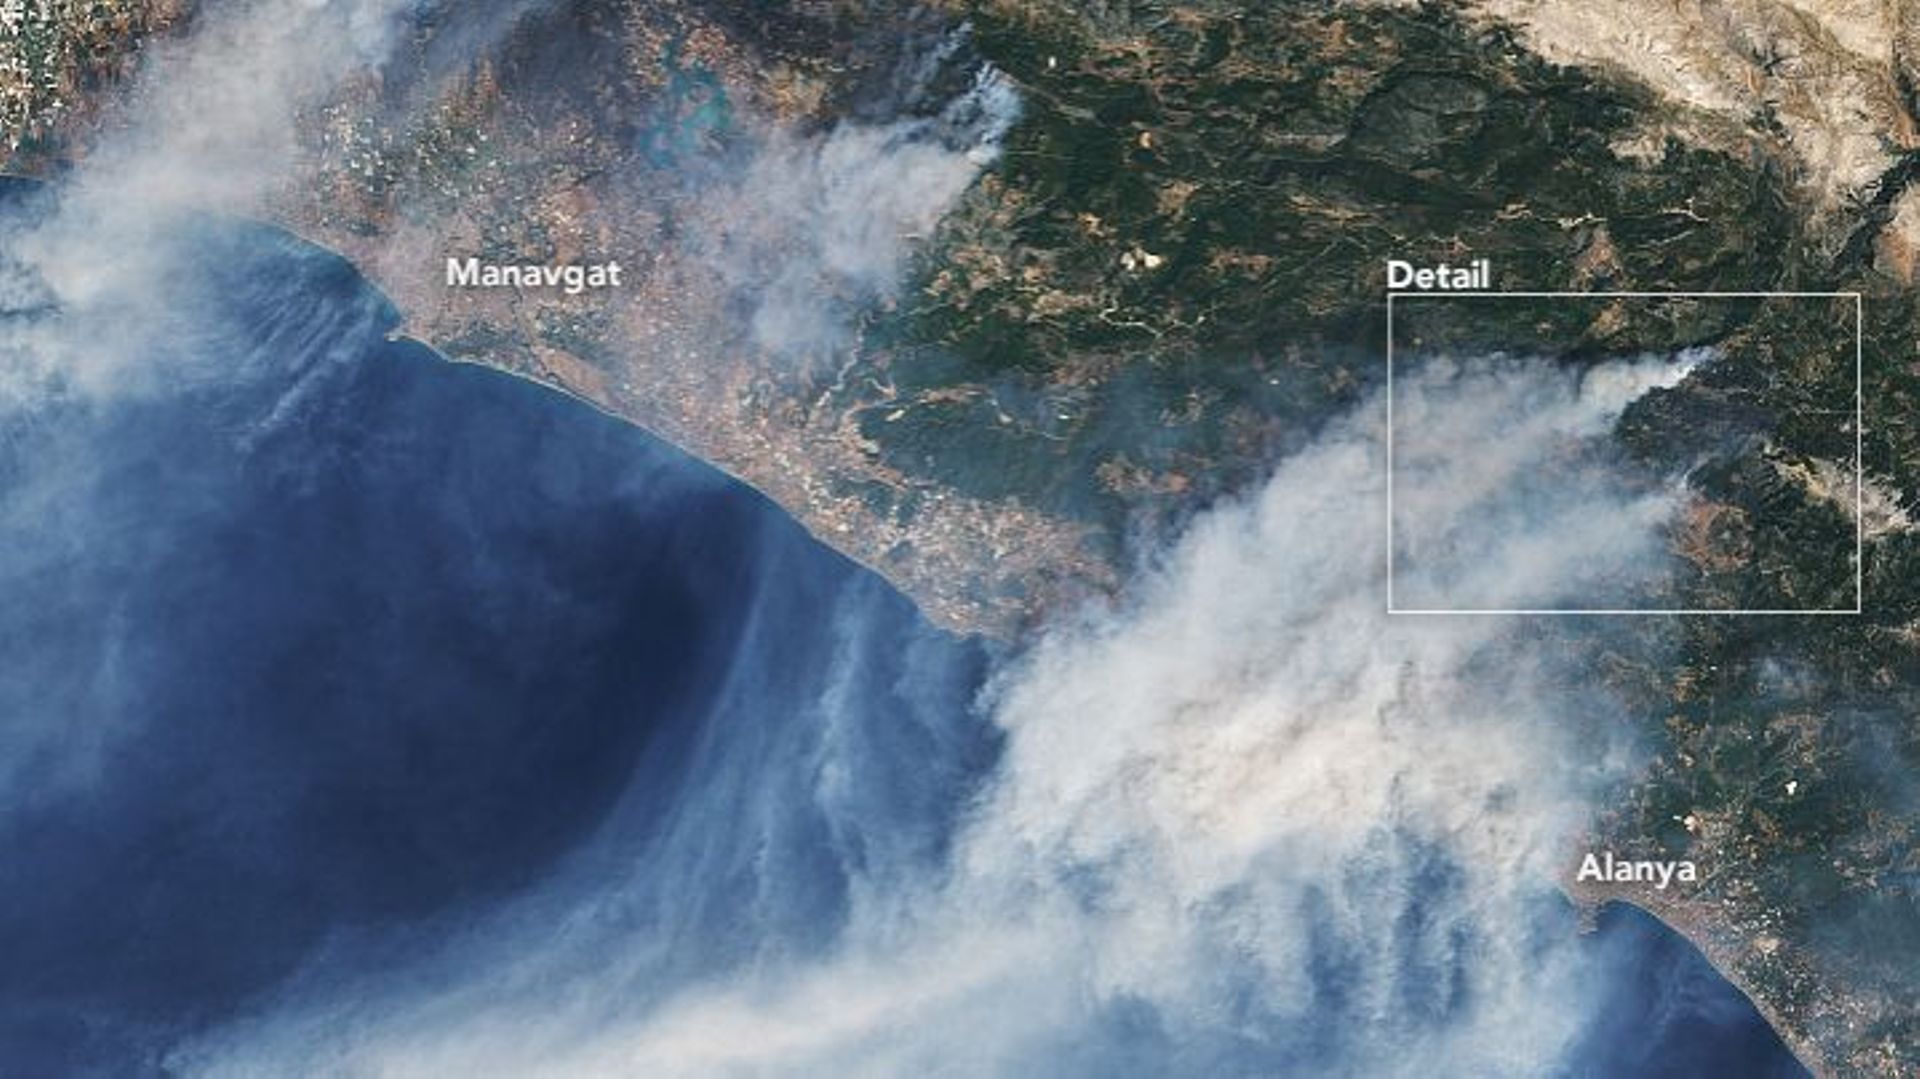 Le 31 juillet 2021, l’imageur terrestre opérationnel (OLI) de Landsat 8 a pris ces images en couleur naturelle d’incendies près des villes côtières d’Alanya et de Manavgat.